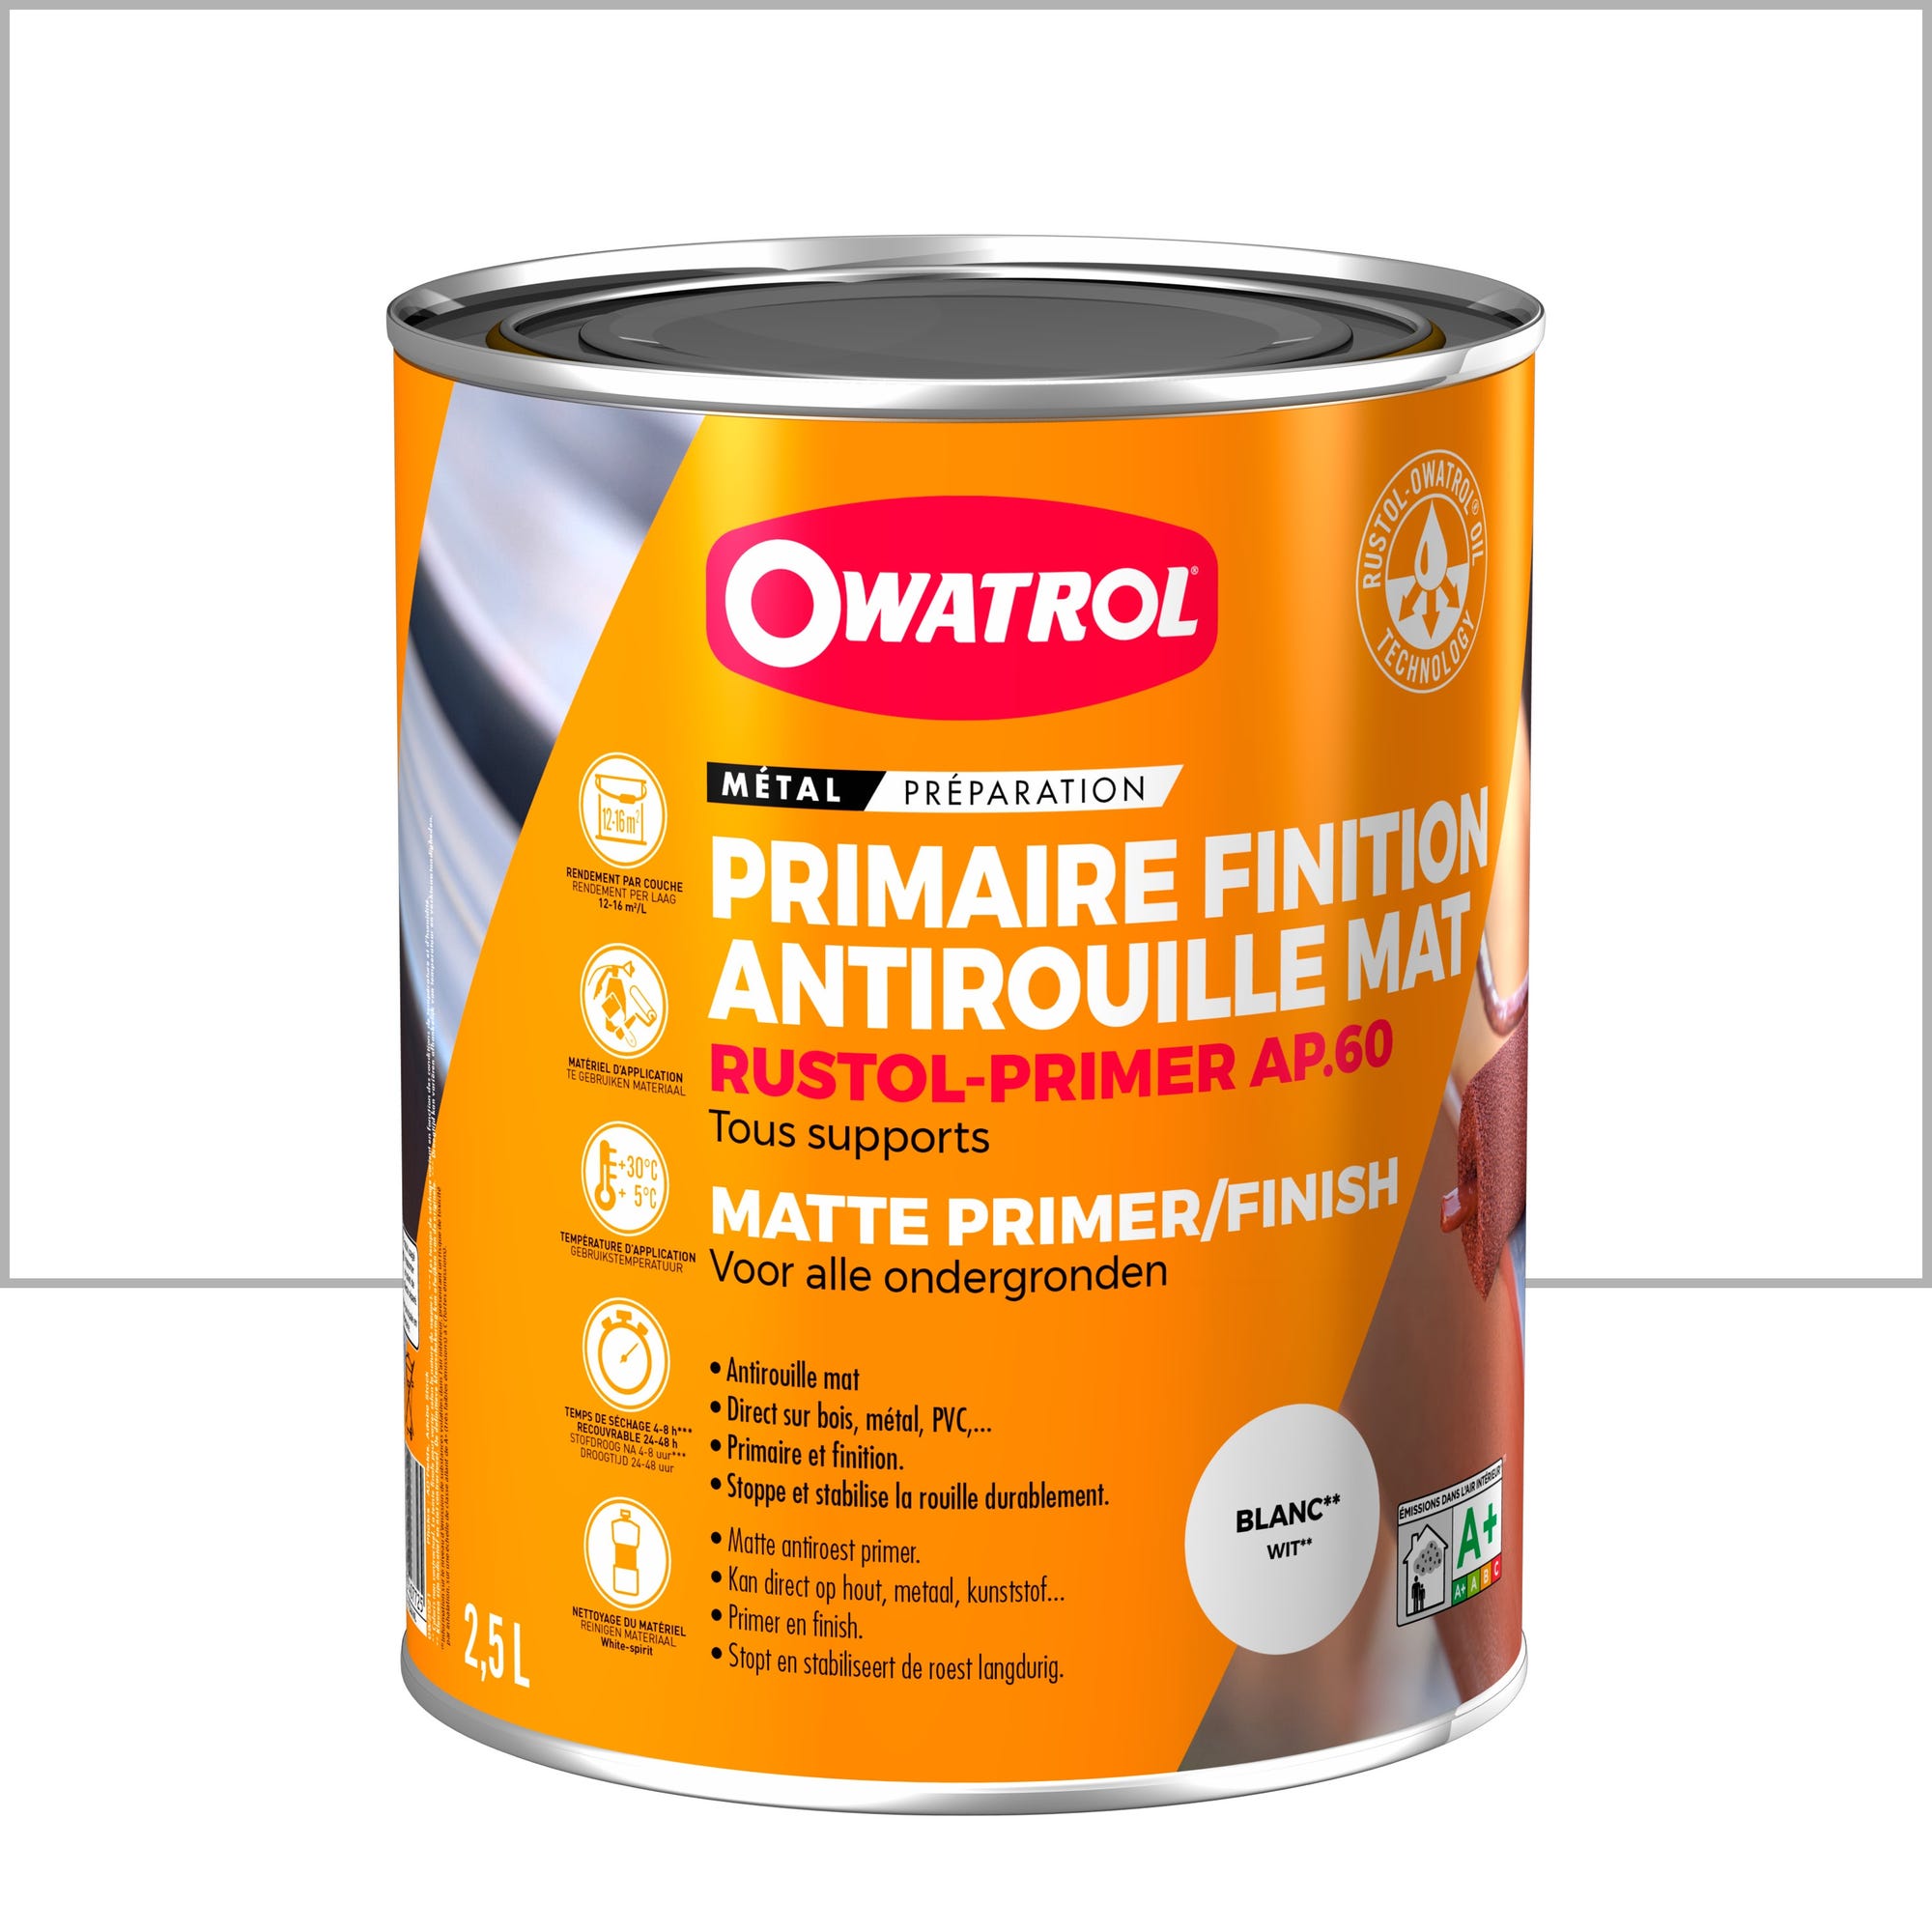 Primaire et finition mat antirouille Owatrol RUSTOL PRIMER AP 60 Blanc (ow4) 2.5 litres 0